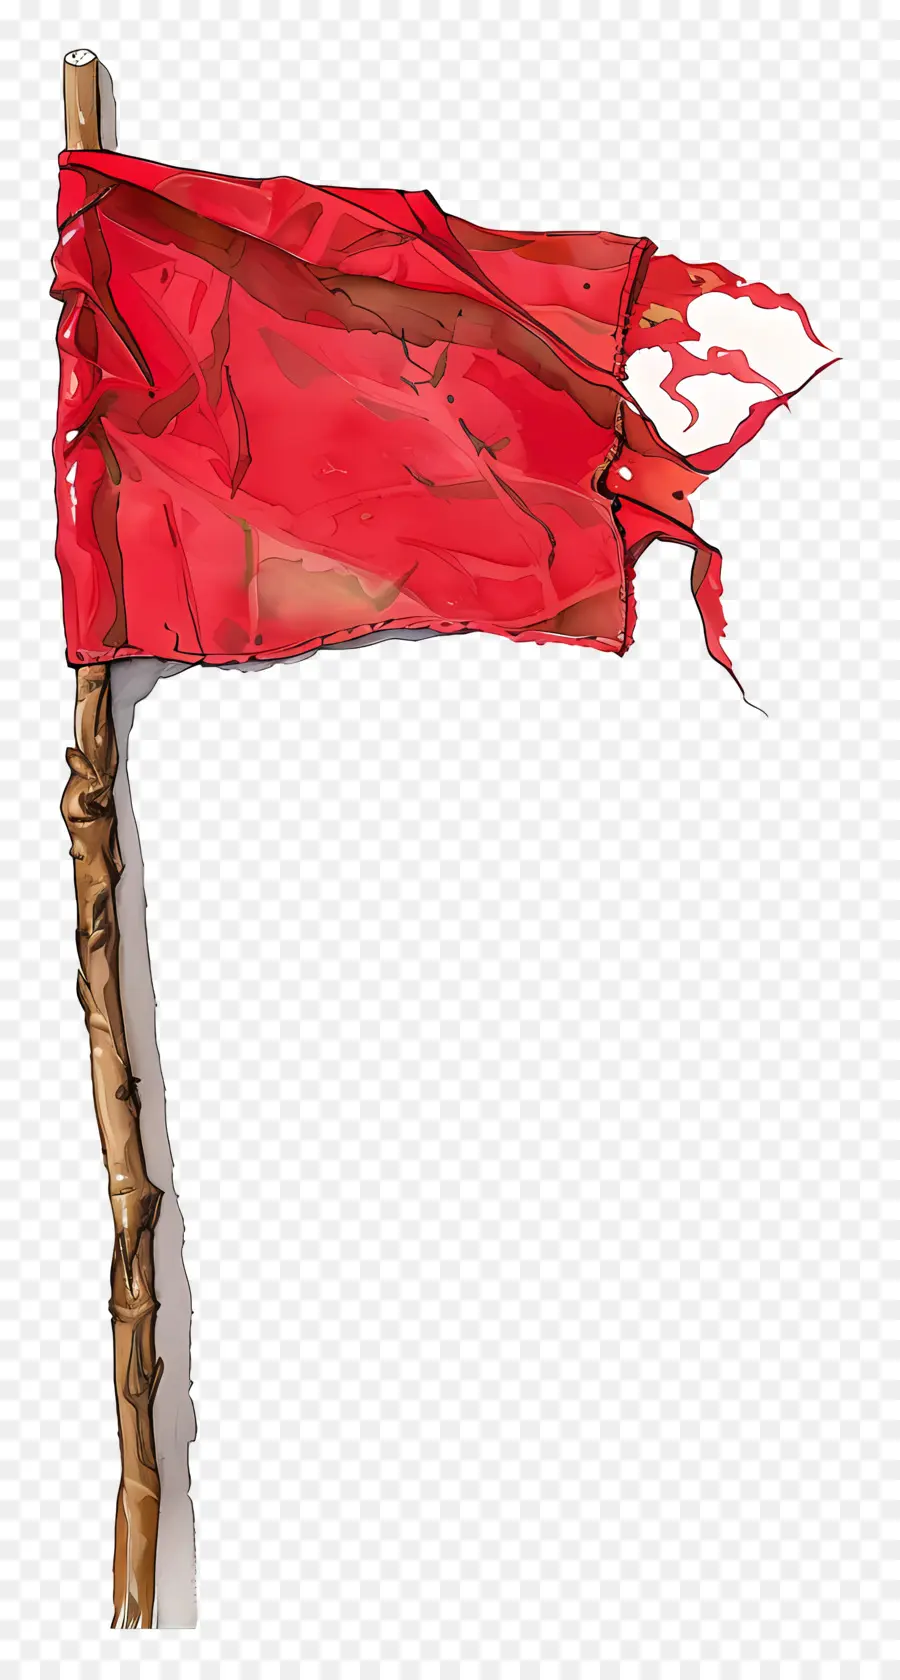 cờ đỏ số 3 biểu tượng vỗ vải - Cờ đỏ với số 3 thổi sang một bên